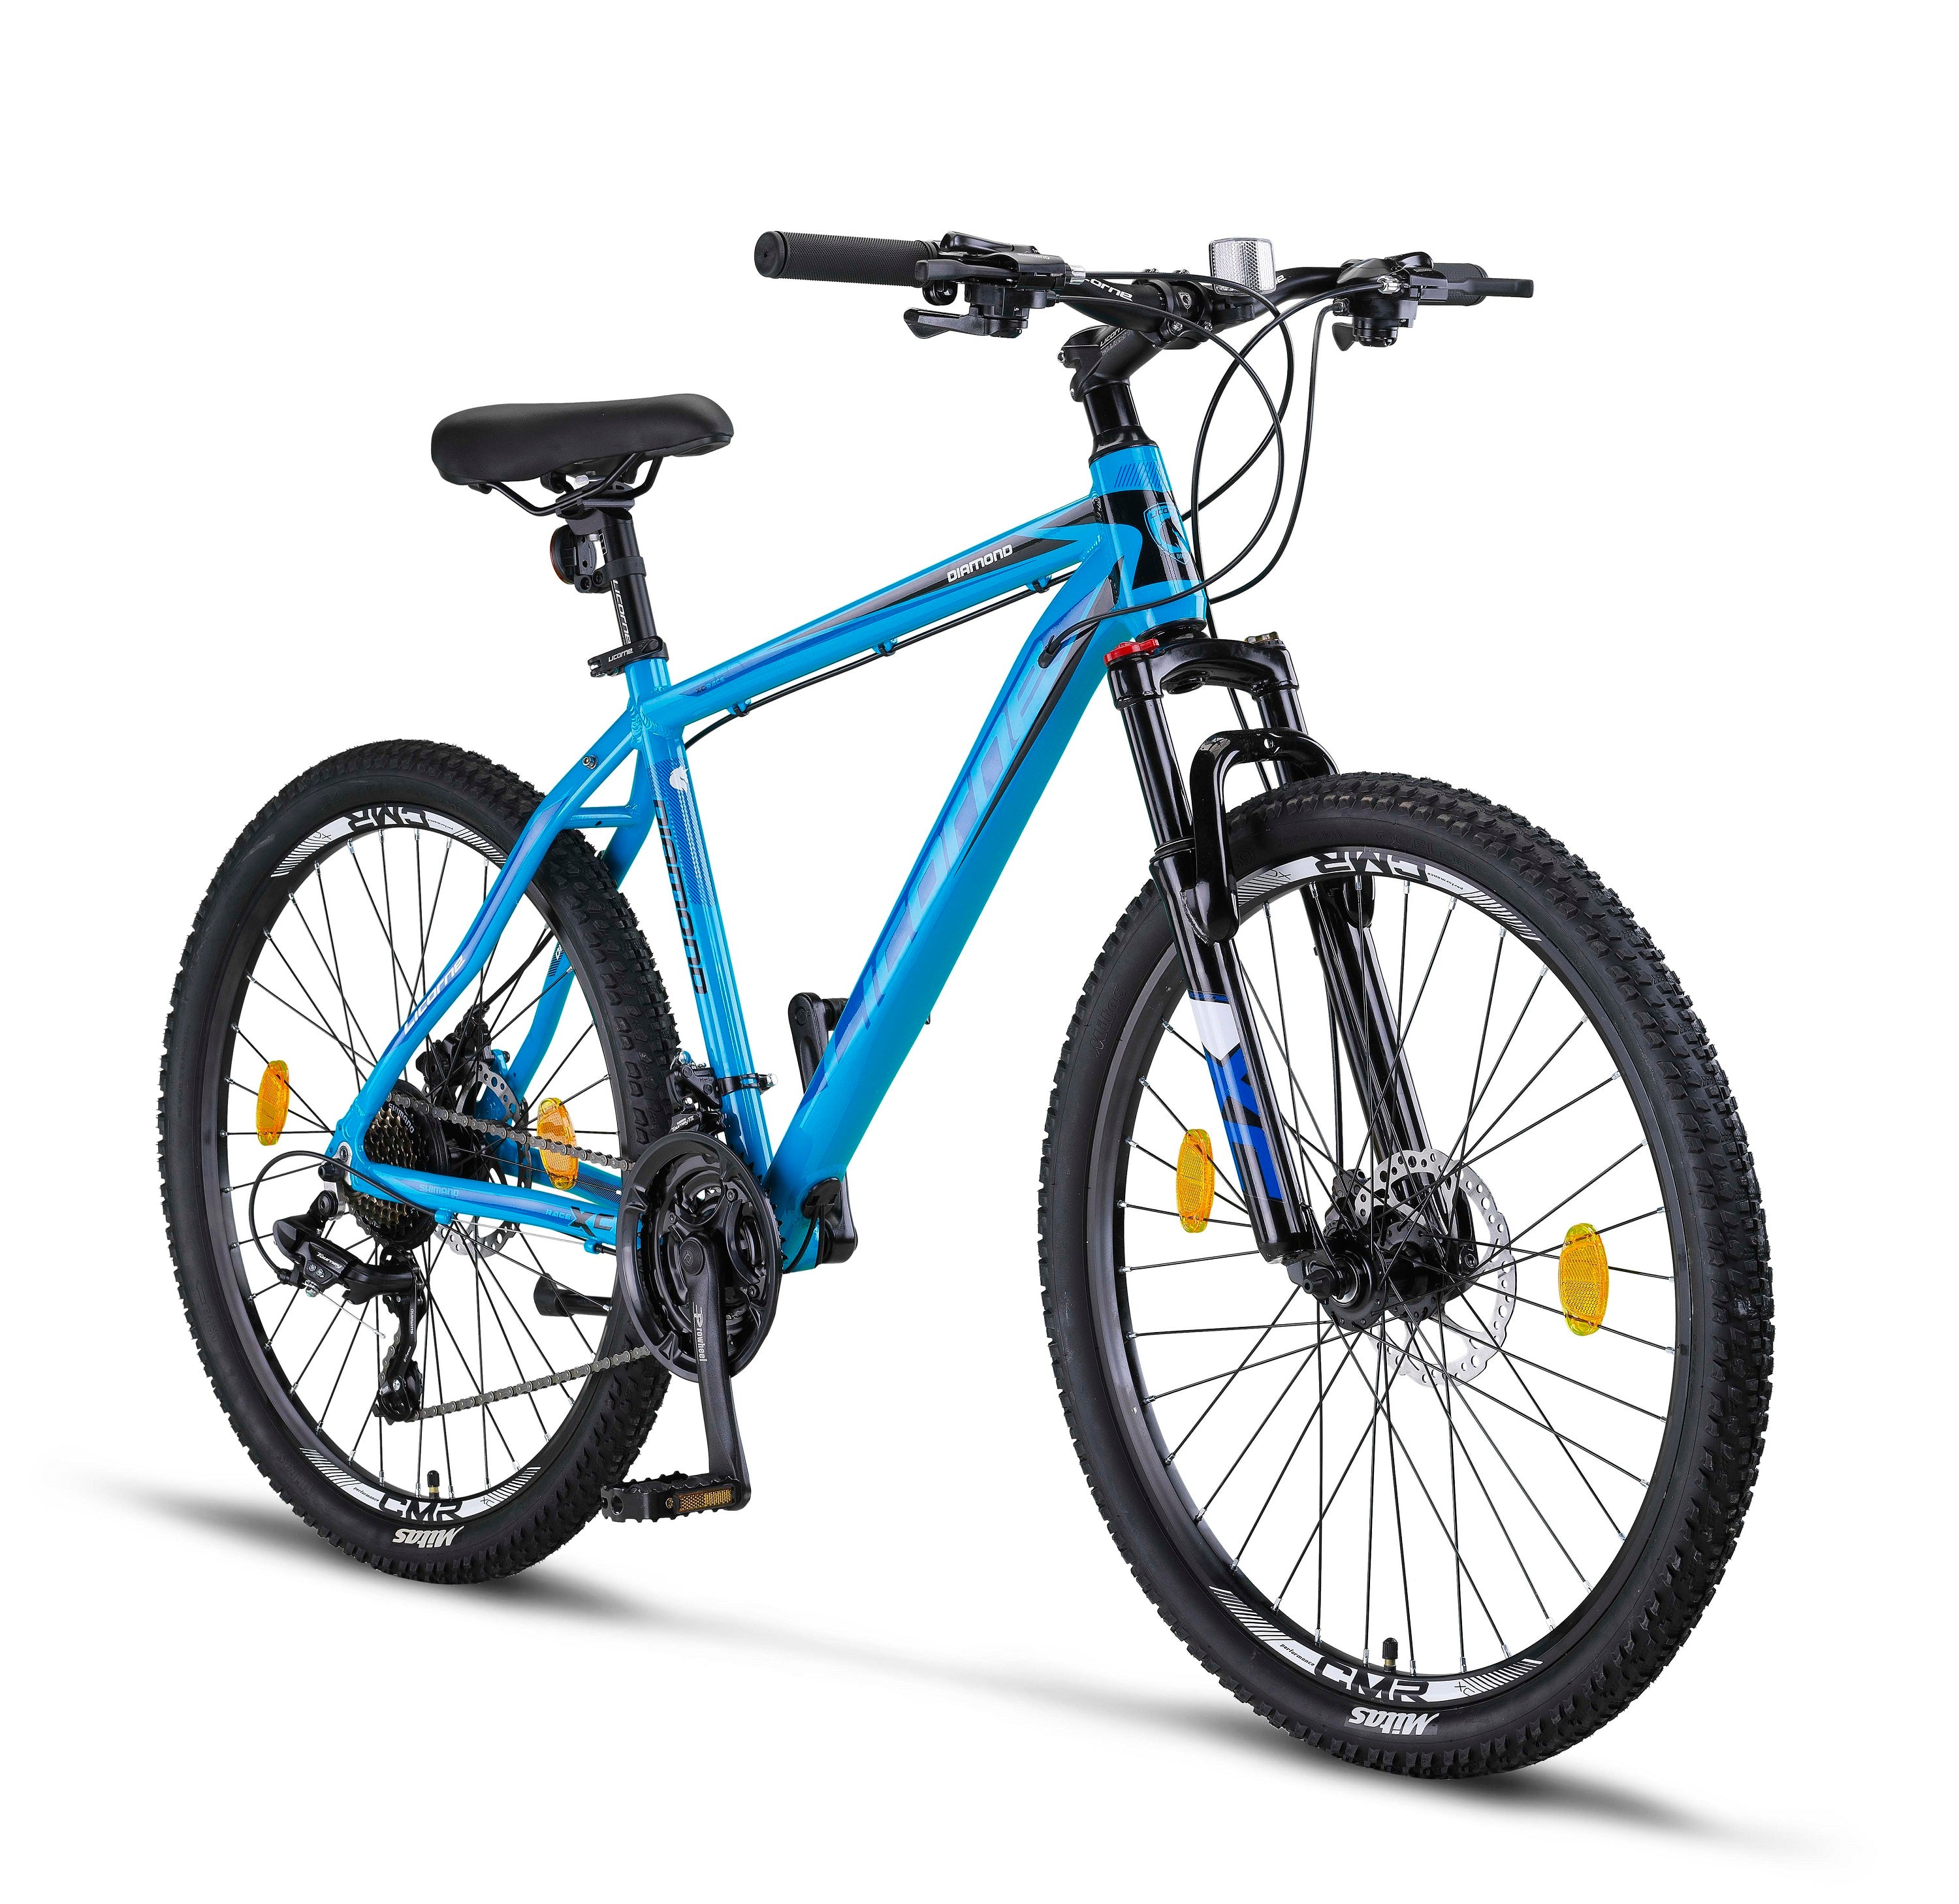 Licorne Bike Diamond bicicleta de montaña premium de aluminio, bicicleta para niños, niñas, hombres y mujeres - 21 velocidades - freno de disco bicicleta para hombres, horquilla delantera ajustable 26, 27,5 y 29 pulgadas